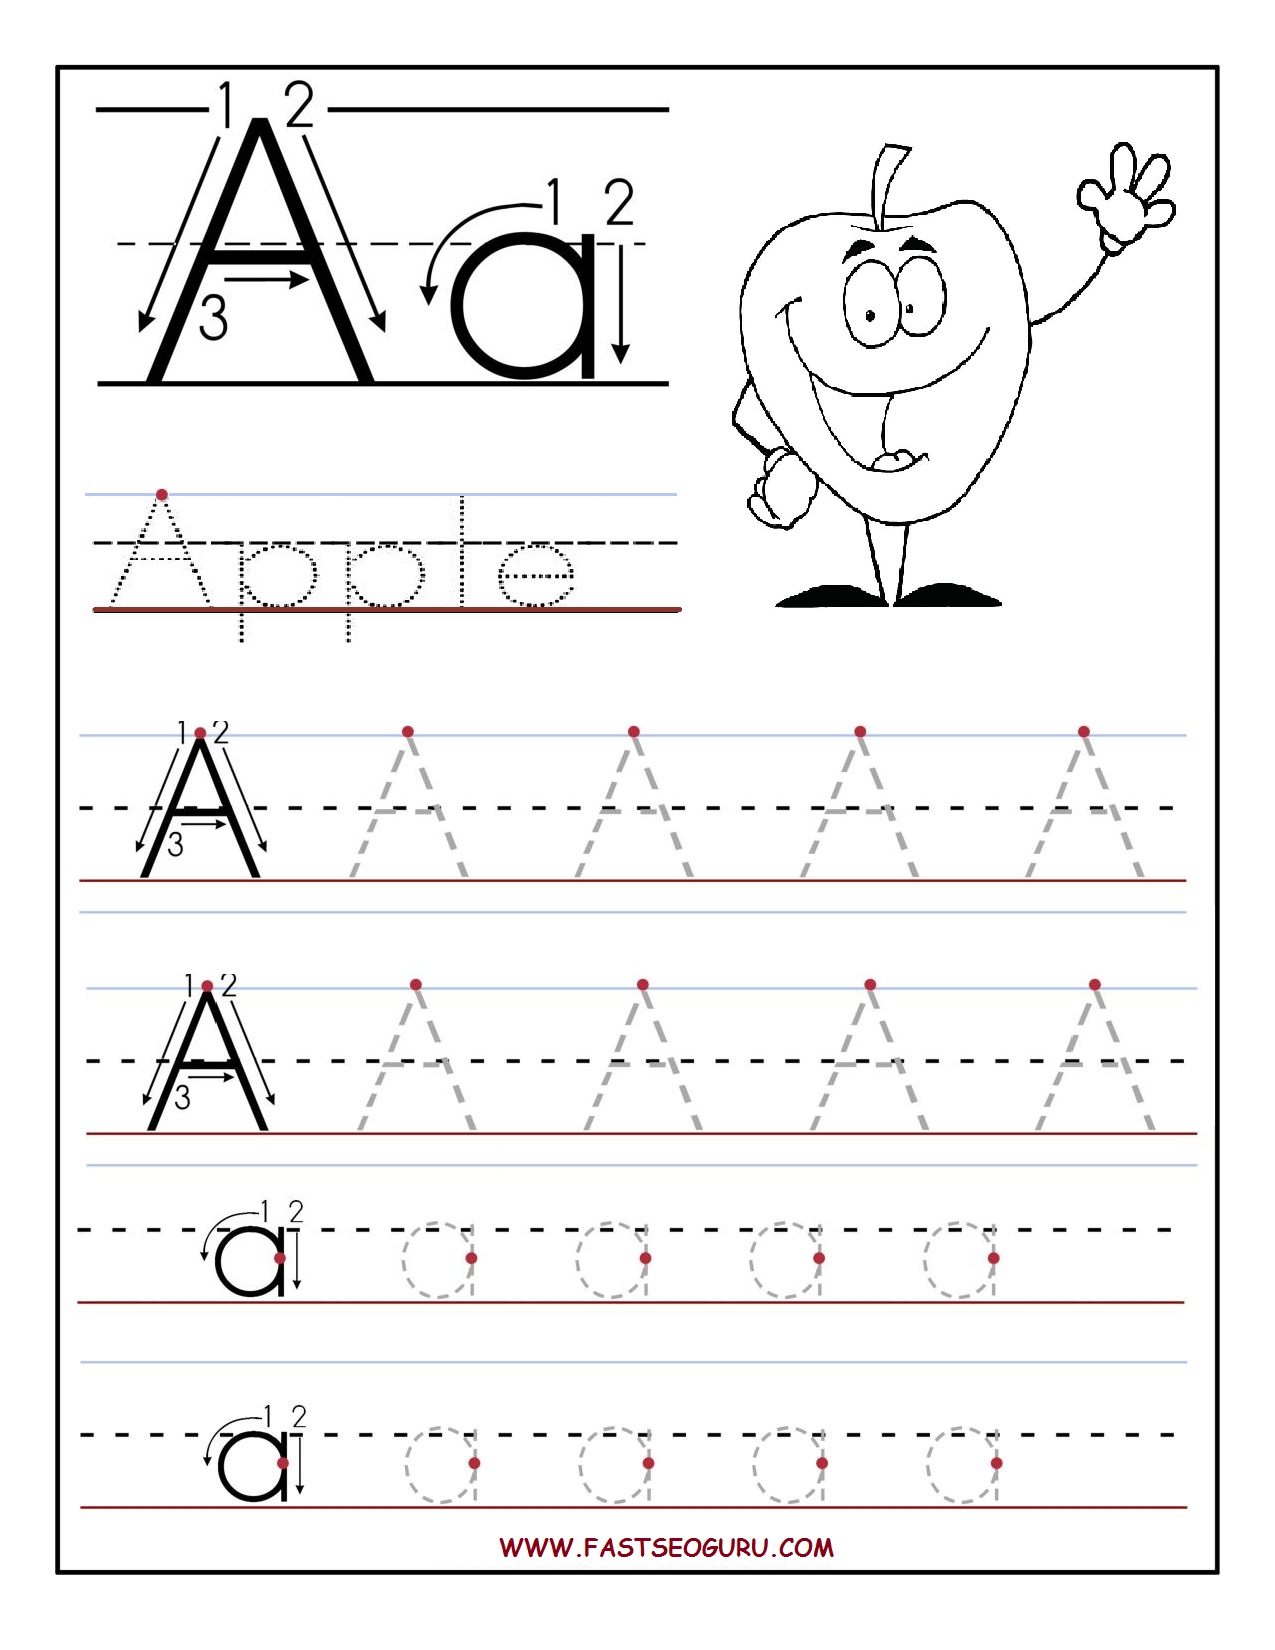 4-best-images-of-abc-worksheets-for-kindergarten-printables-alphabet-abc-worksheets-for